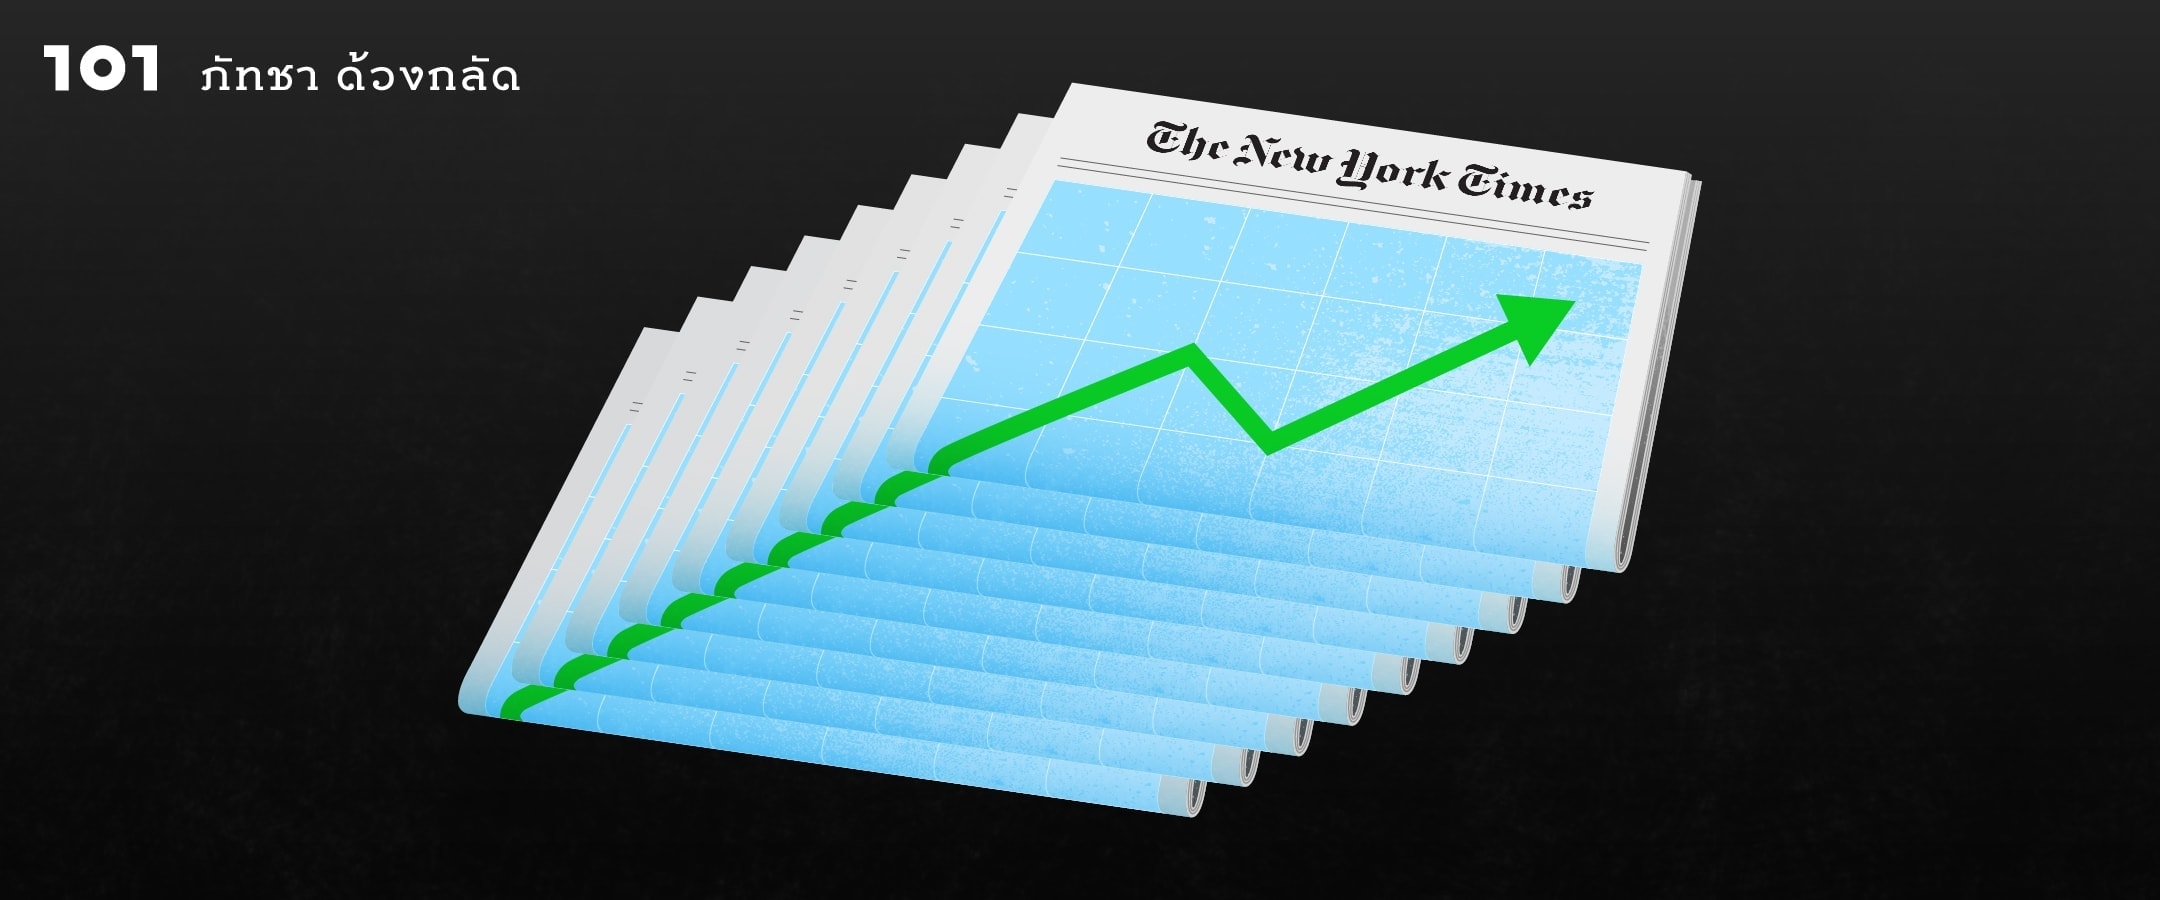 ความสำเร็จของนิวยอร์กไทมส์ ข่าวร้ายของวงการสื่อ?